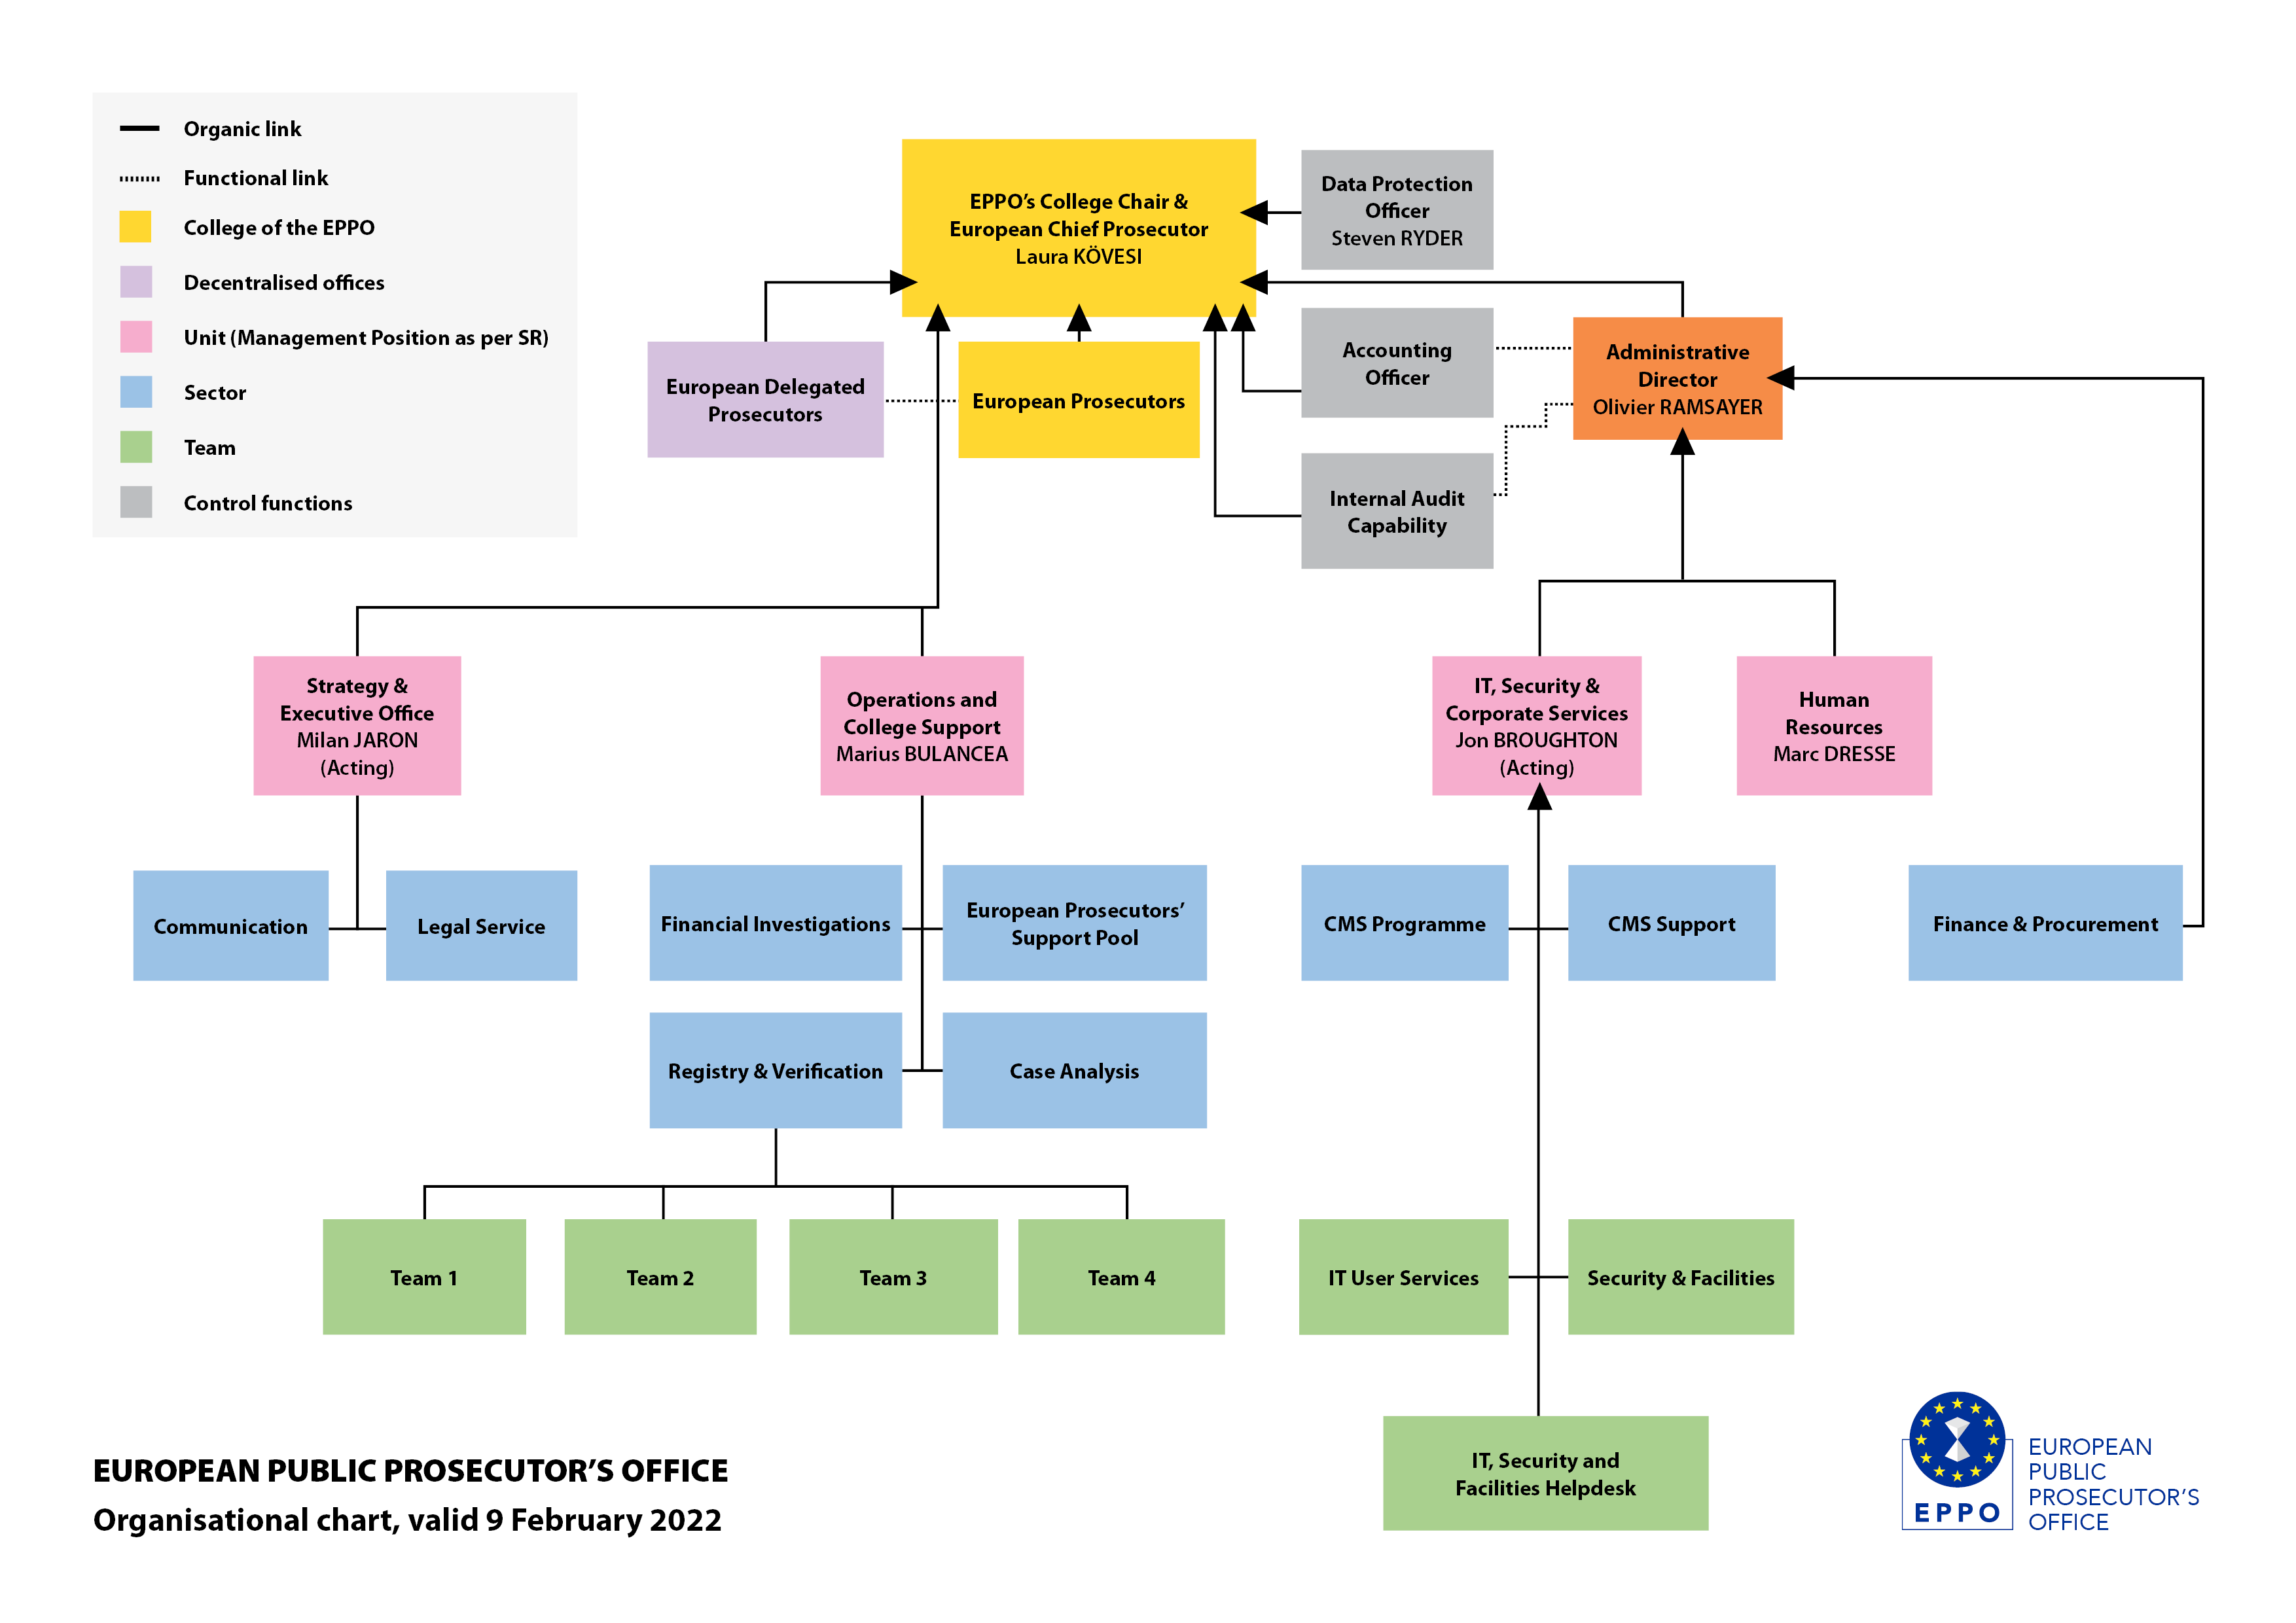 Det luxembourgske hovedkontors organisationsstruktur